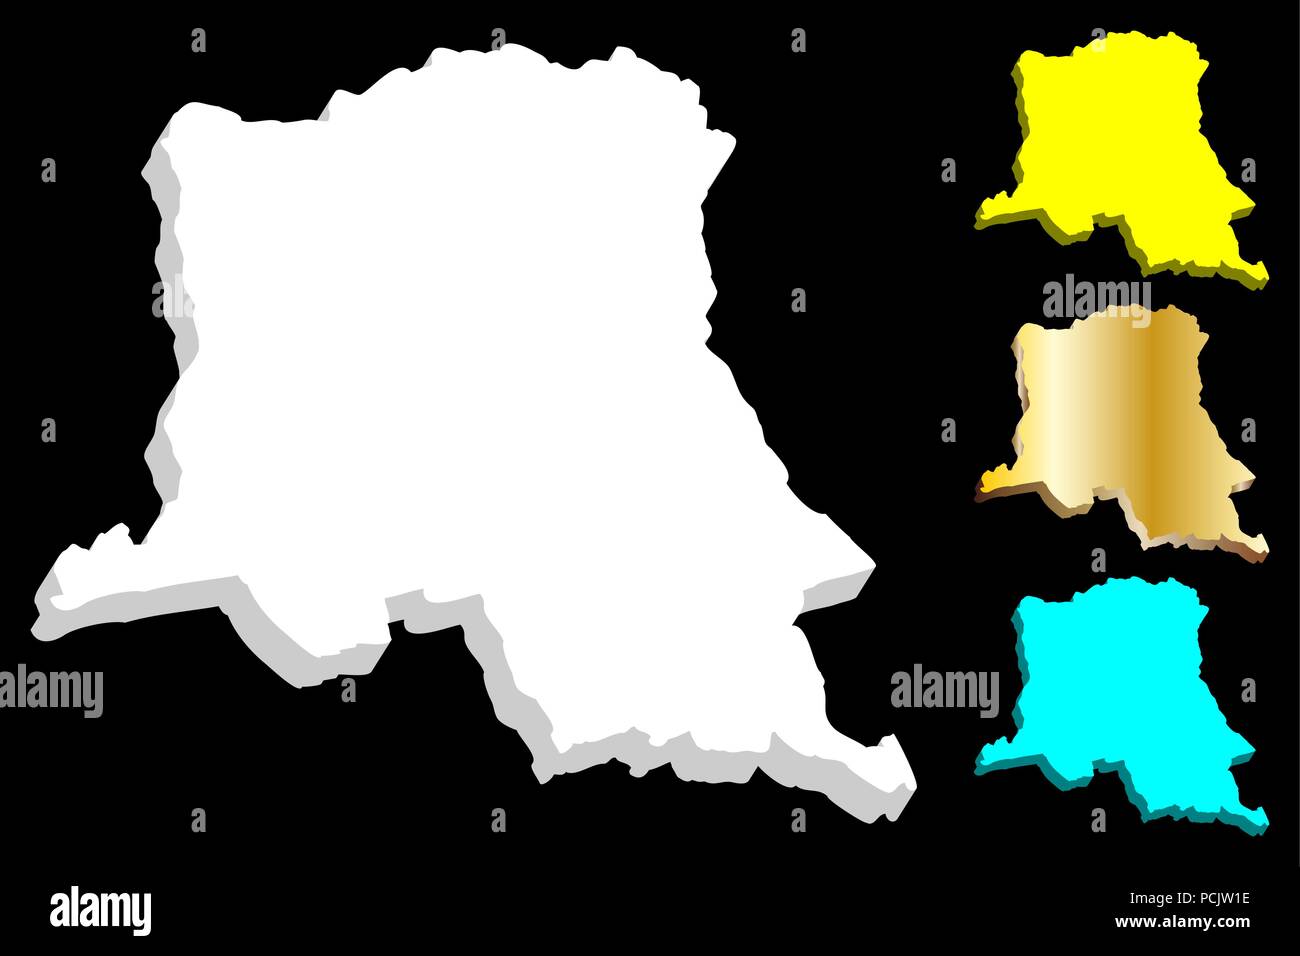 3D de la carte de la République démocratique du Congo (République démocratique du Congo (RDC, Congo-Kinshasa) - blanc, jaune, bleu et or - vector illustration Illustration de Vecteur